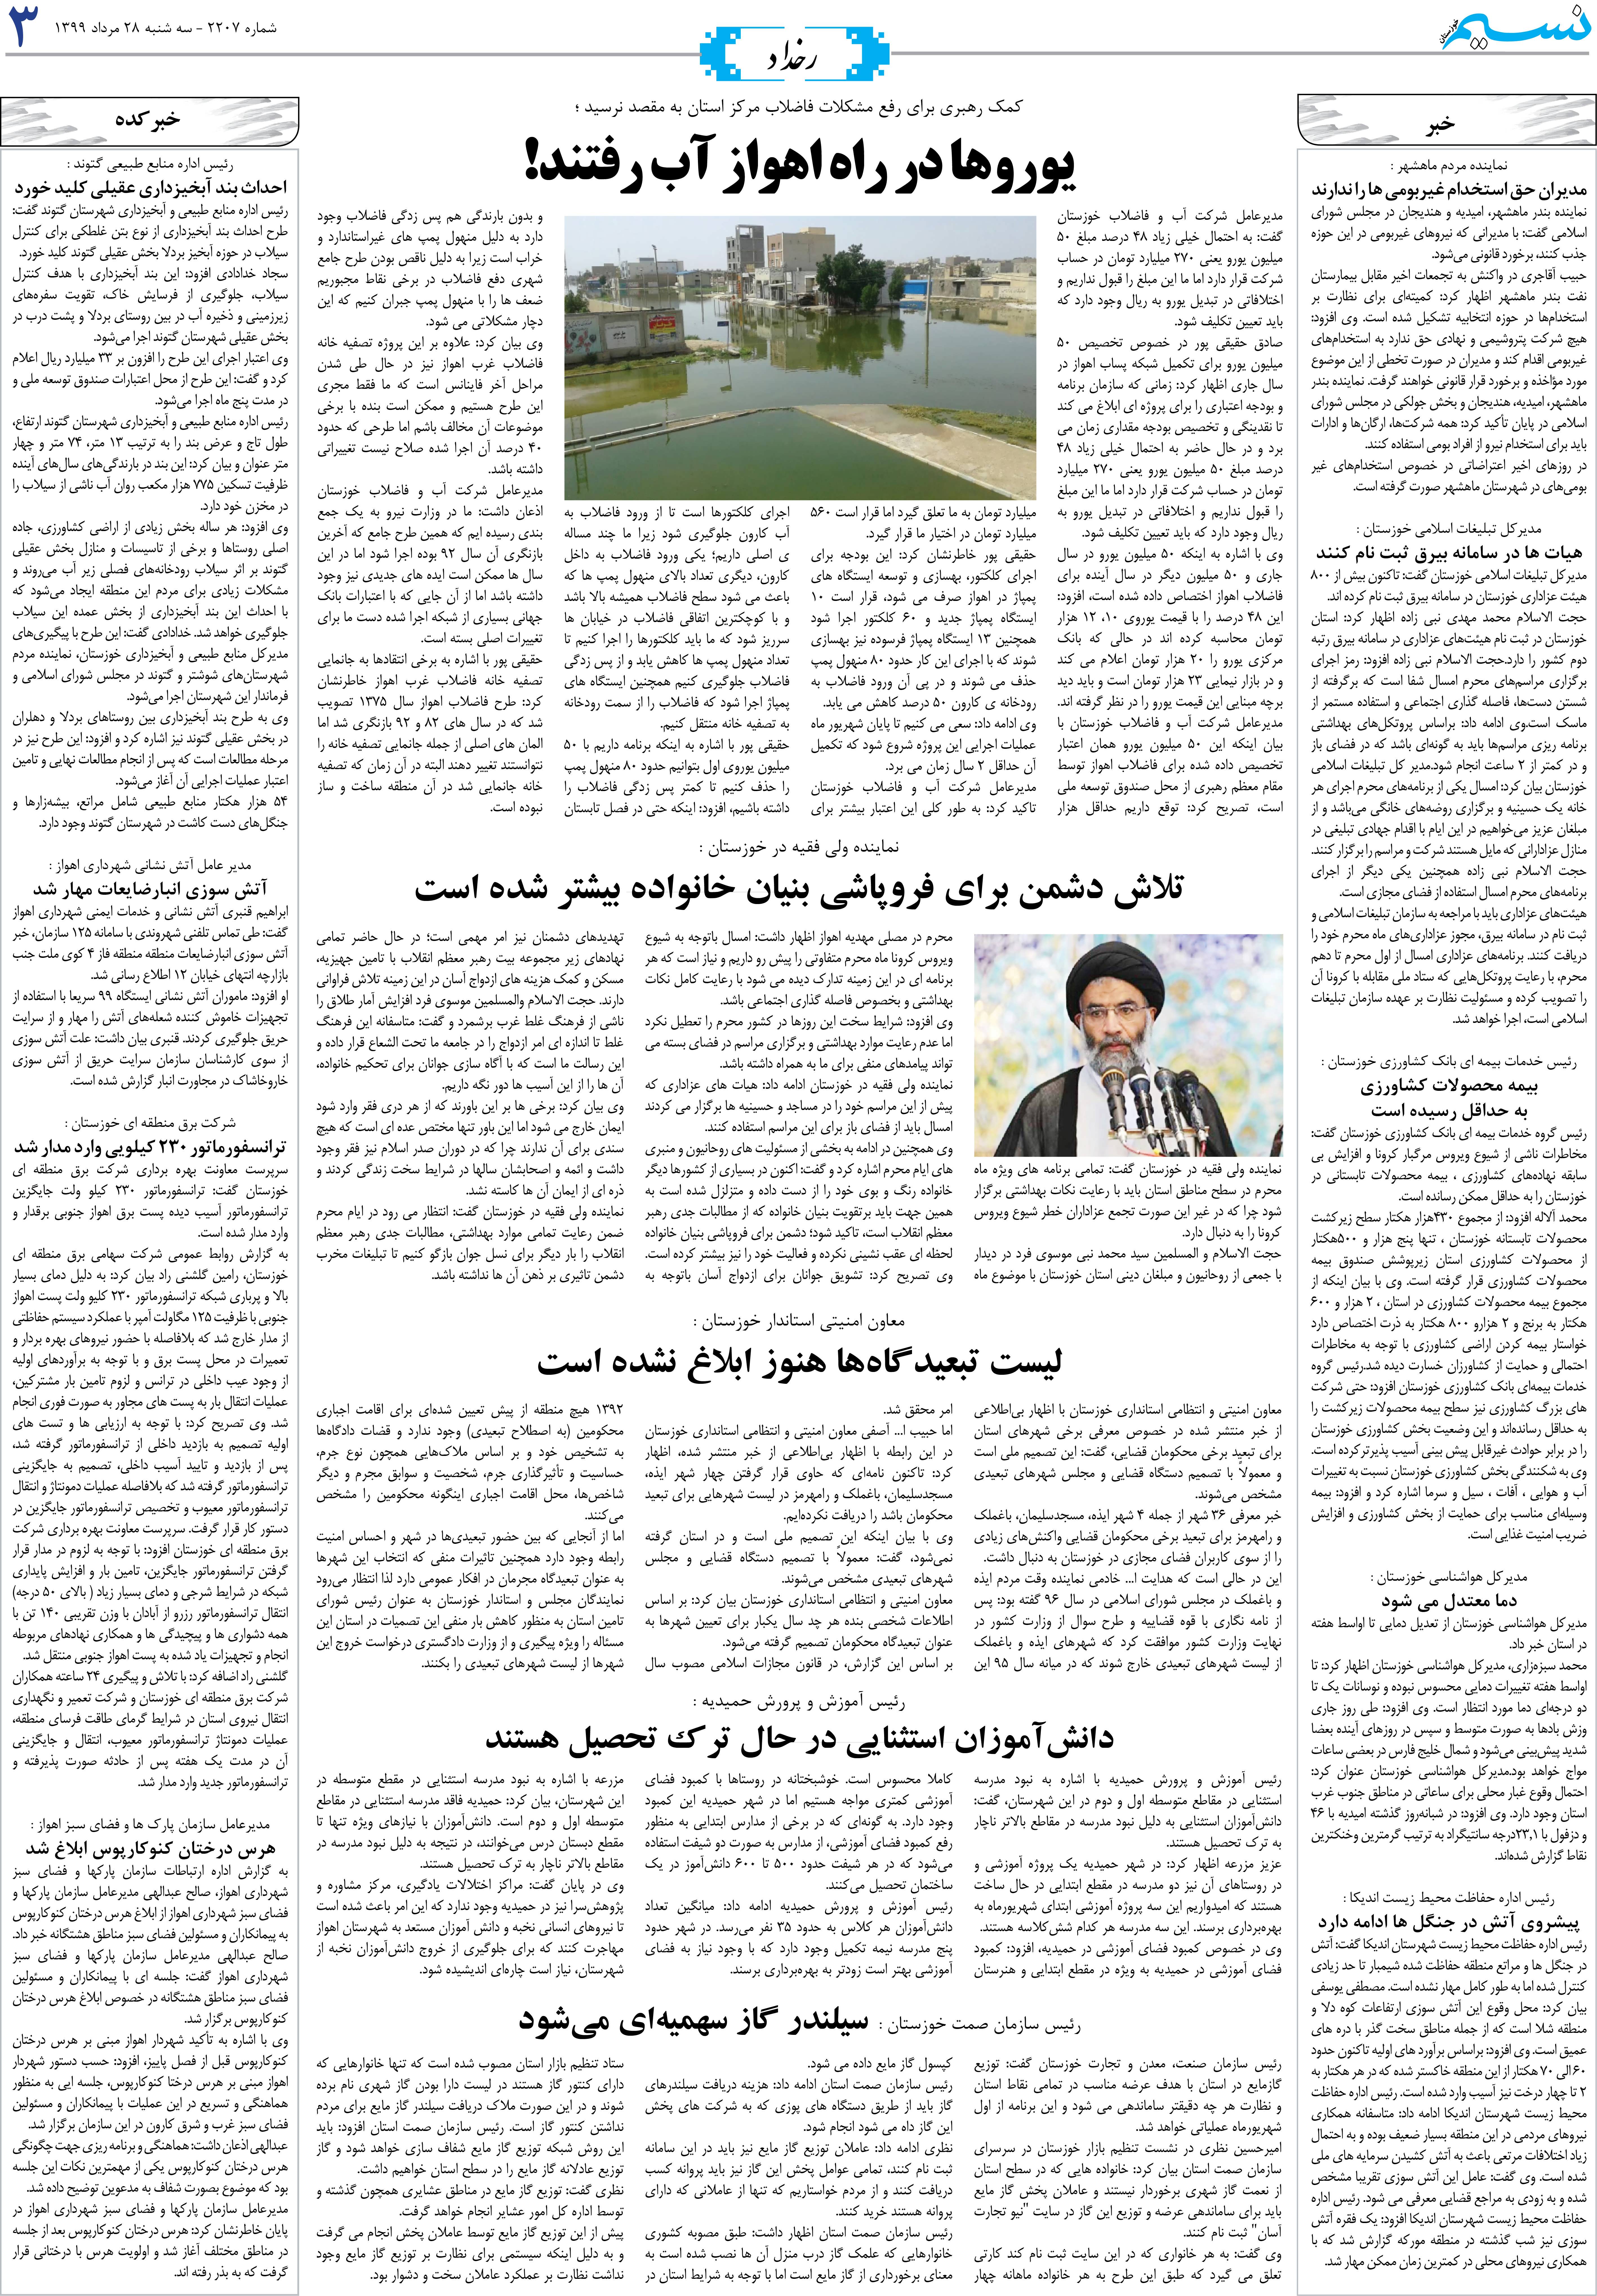 صفحه رخداد روزنامه نسیم شماره 2207